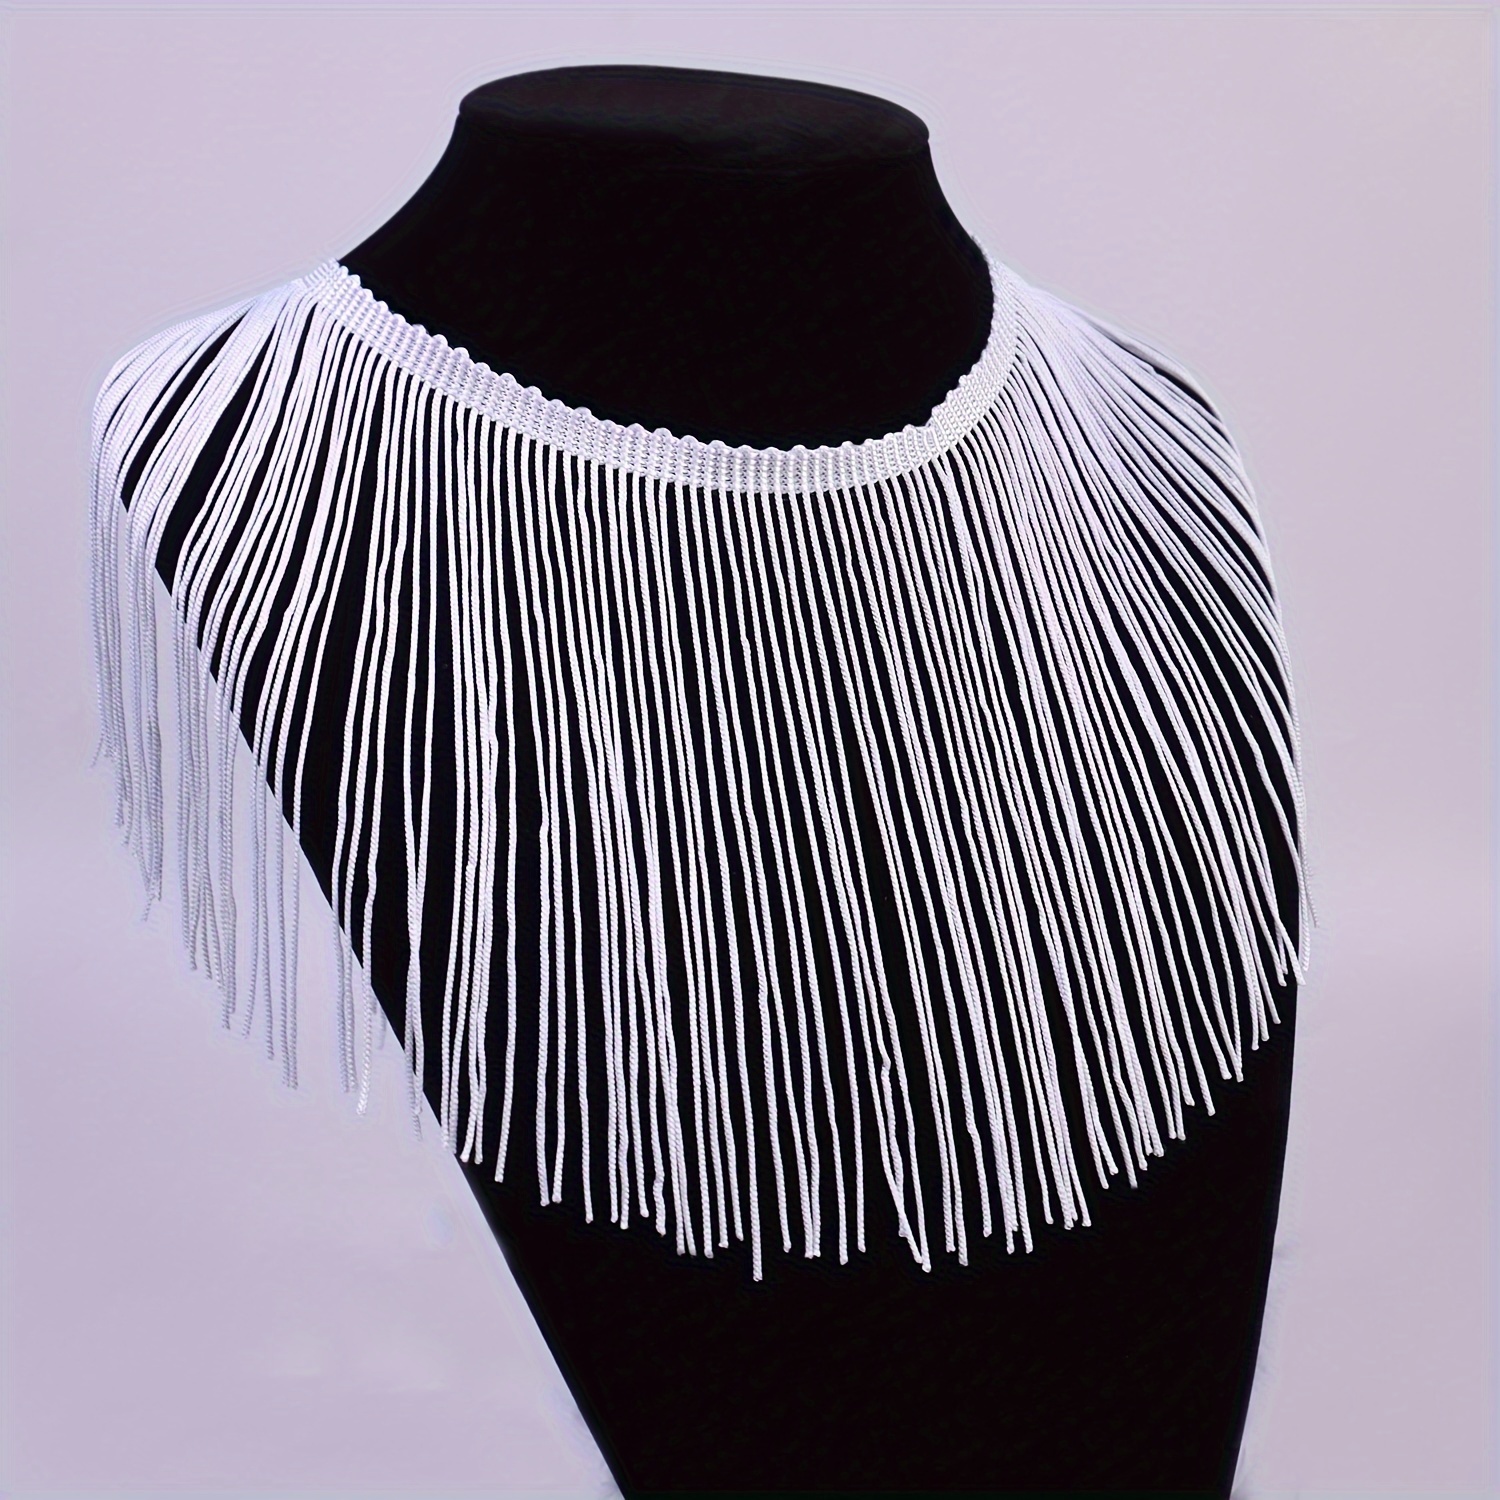 Black Lace Ribbon Applique, White Lace Decoration, Tassel Fringe Trim